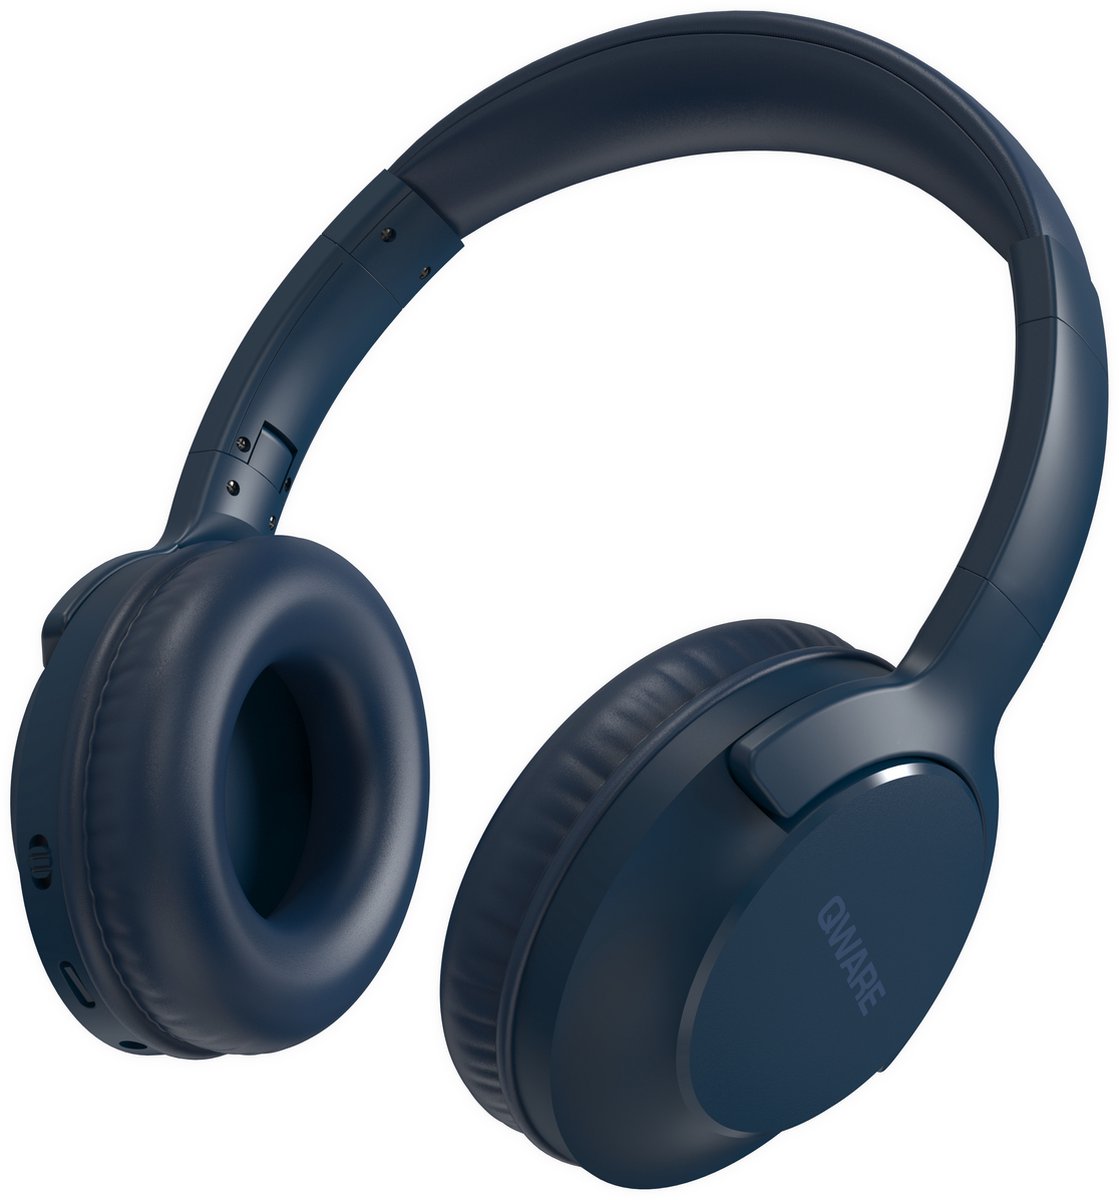 Qware - Draadloze Koptelefoon - Draadloos- Bluetooth 5.1 - Headset - Headphone - Volumeknoppen - USB-C - 20h luisteren op 50% - Vouwbaar Design - Blauw